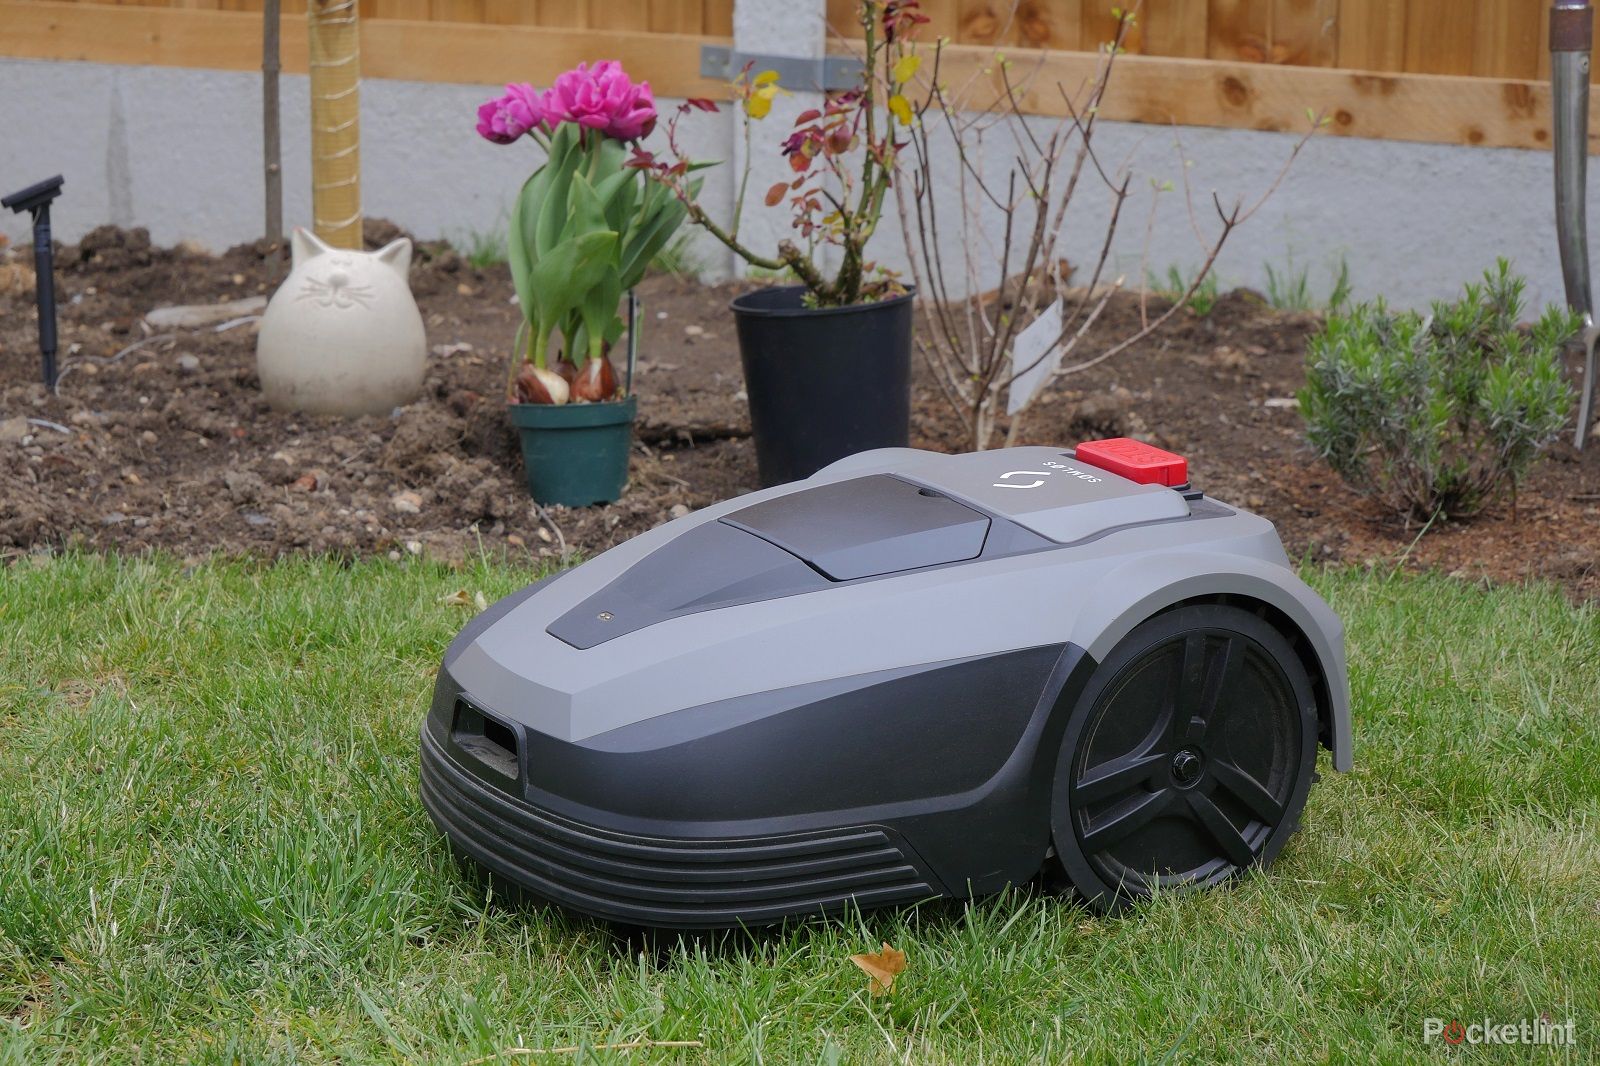 Best robot lawn mower photo 8